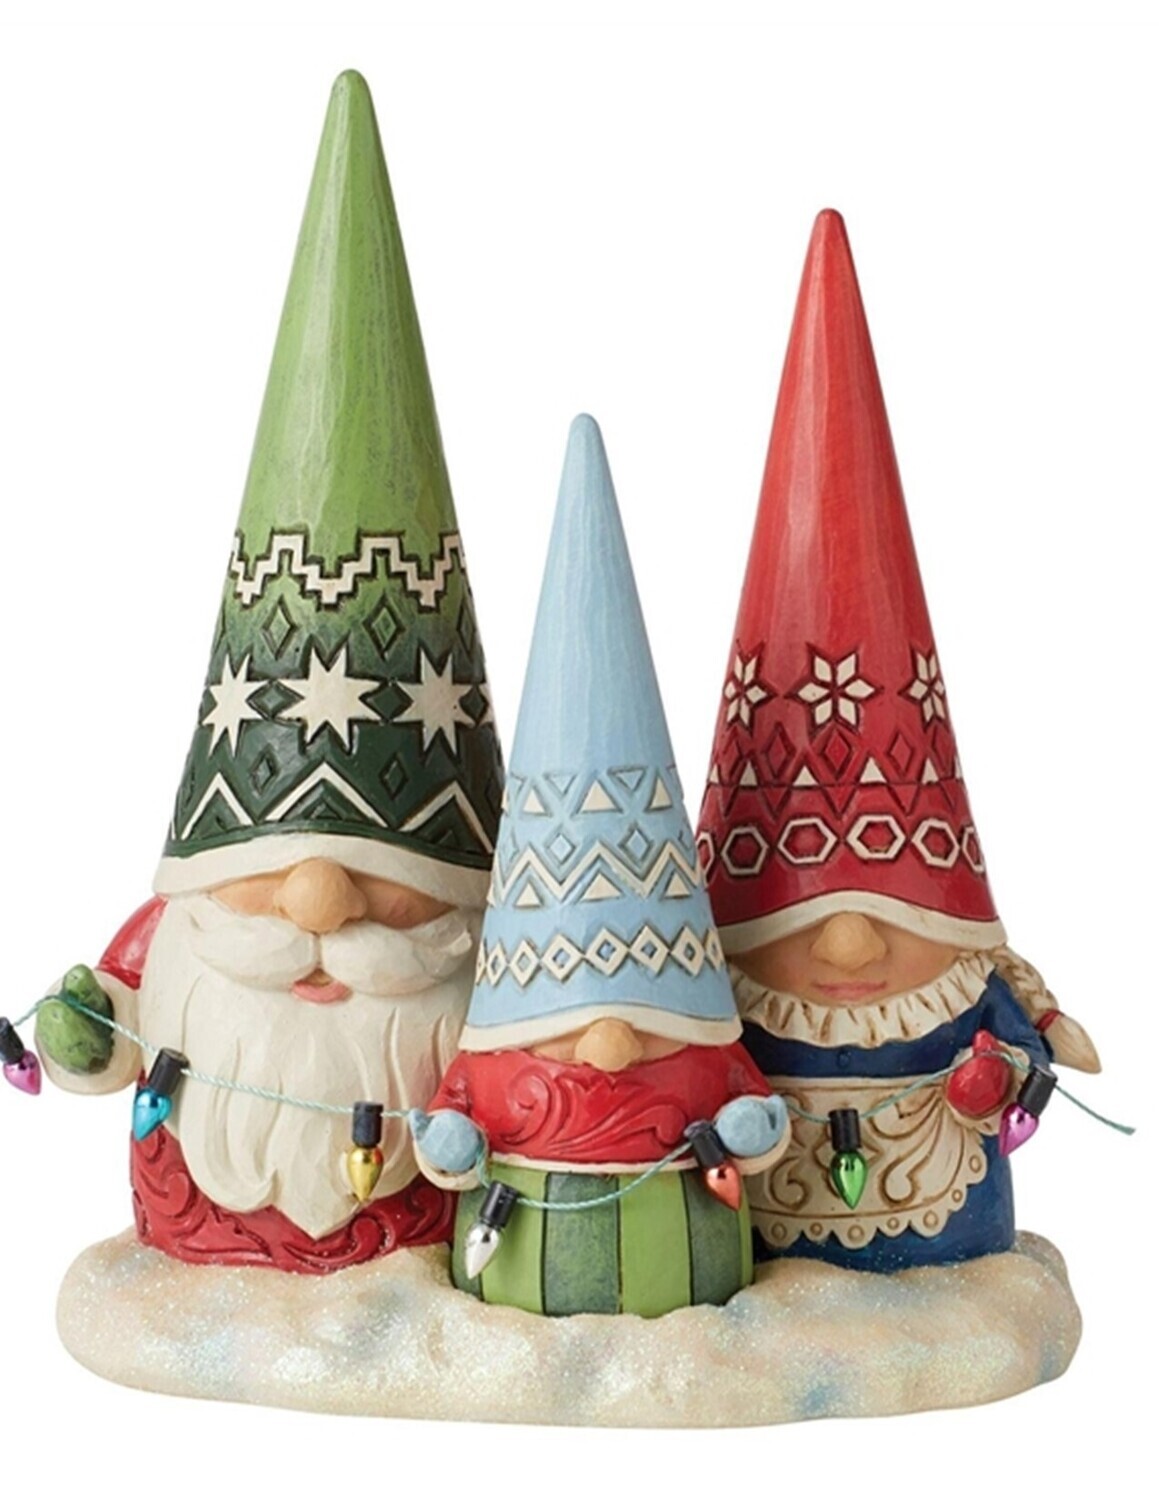 Jim Shore "Christmas Gnome Family" (6011157) NEW for 2022